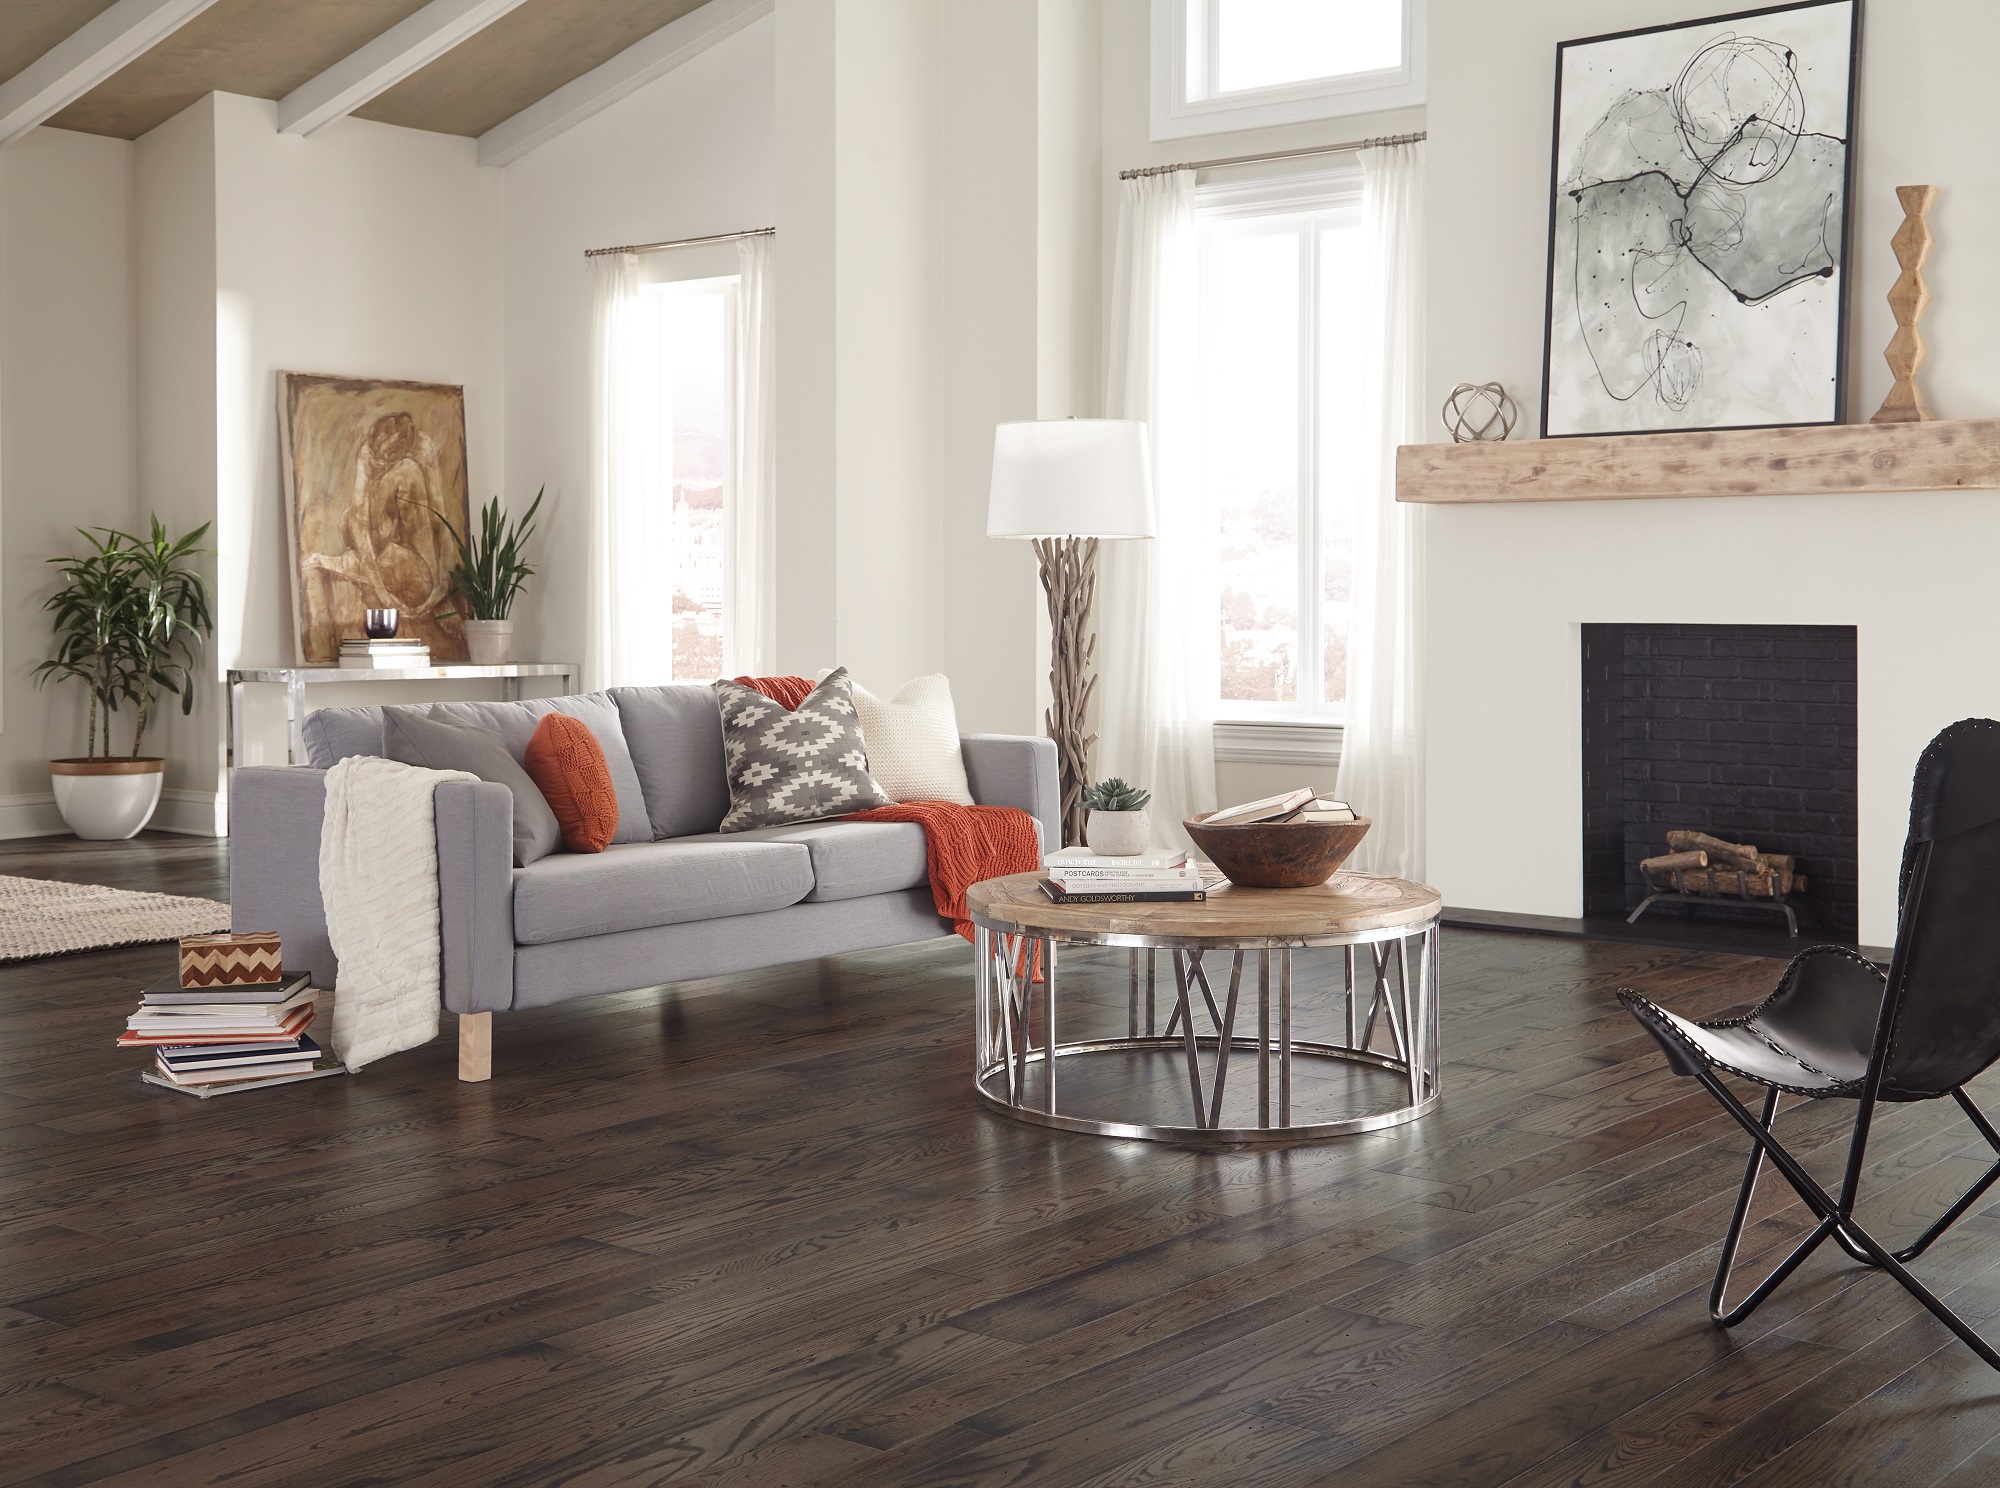 Home Somerset Hardwood Flooring, Klassic Hardwood Floors Houston